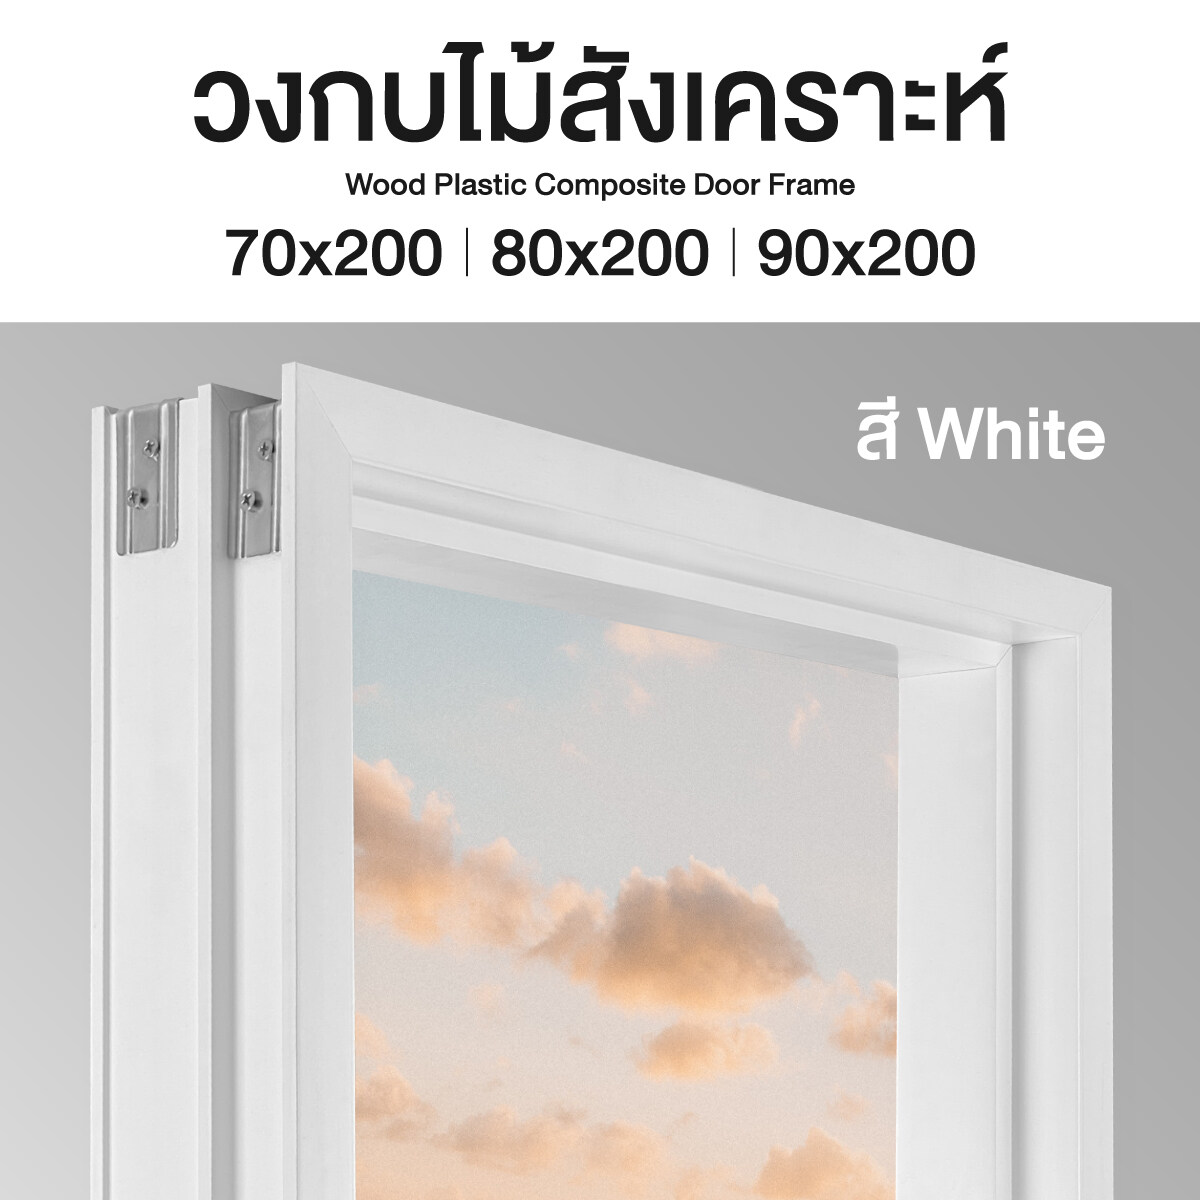 วงกบประตู ไม้สังเคราะห์ สี White มี 3 ขนาด ส่งฟรี รับประกันปลวก มอด ขอบประตู วงกบ วงกบประตู Doorframe ลีโอวูด